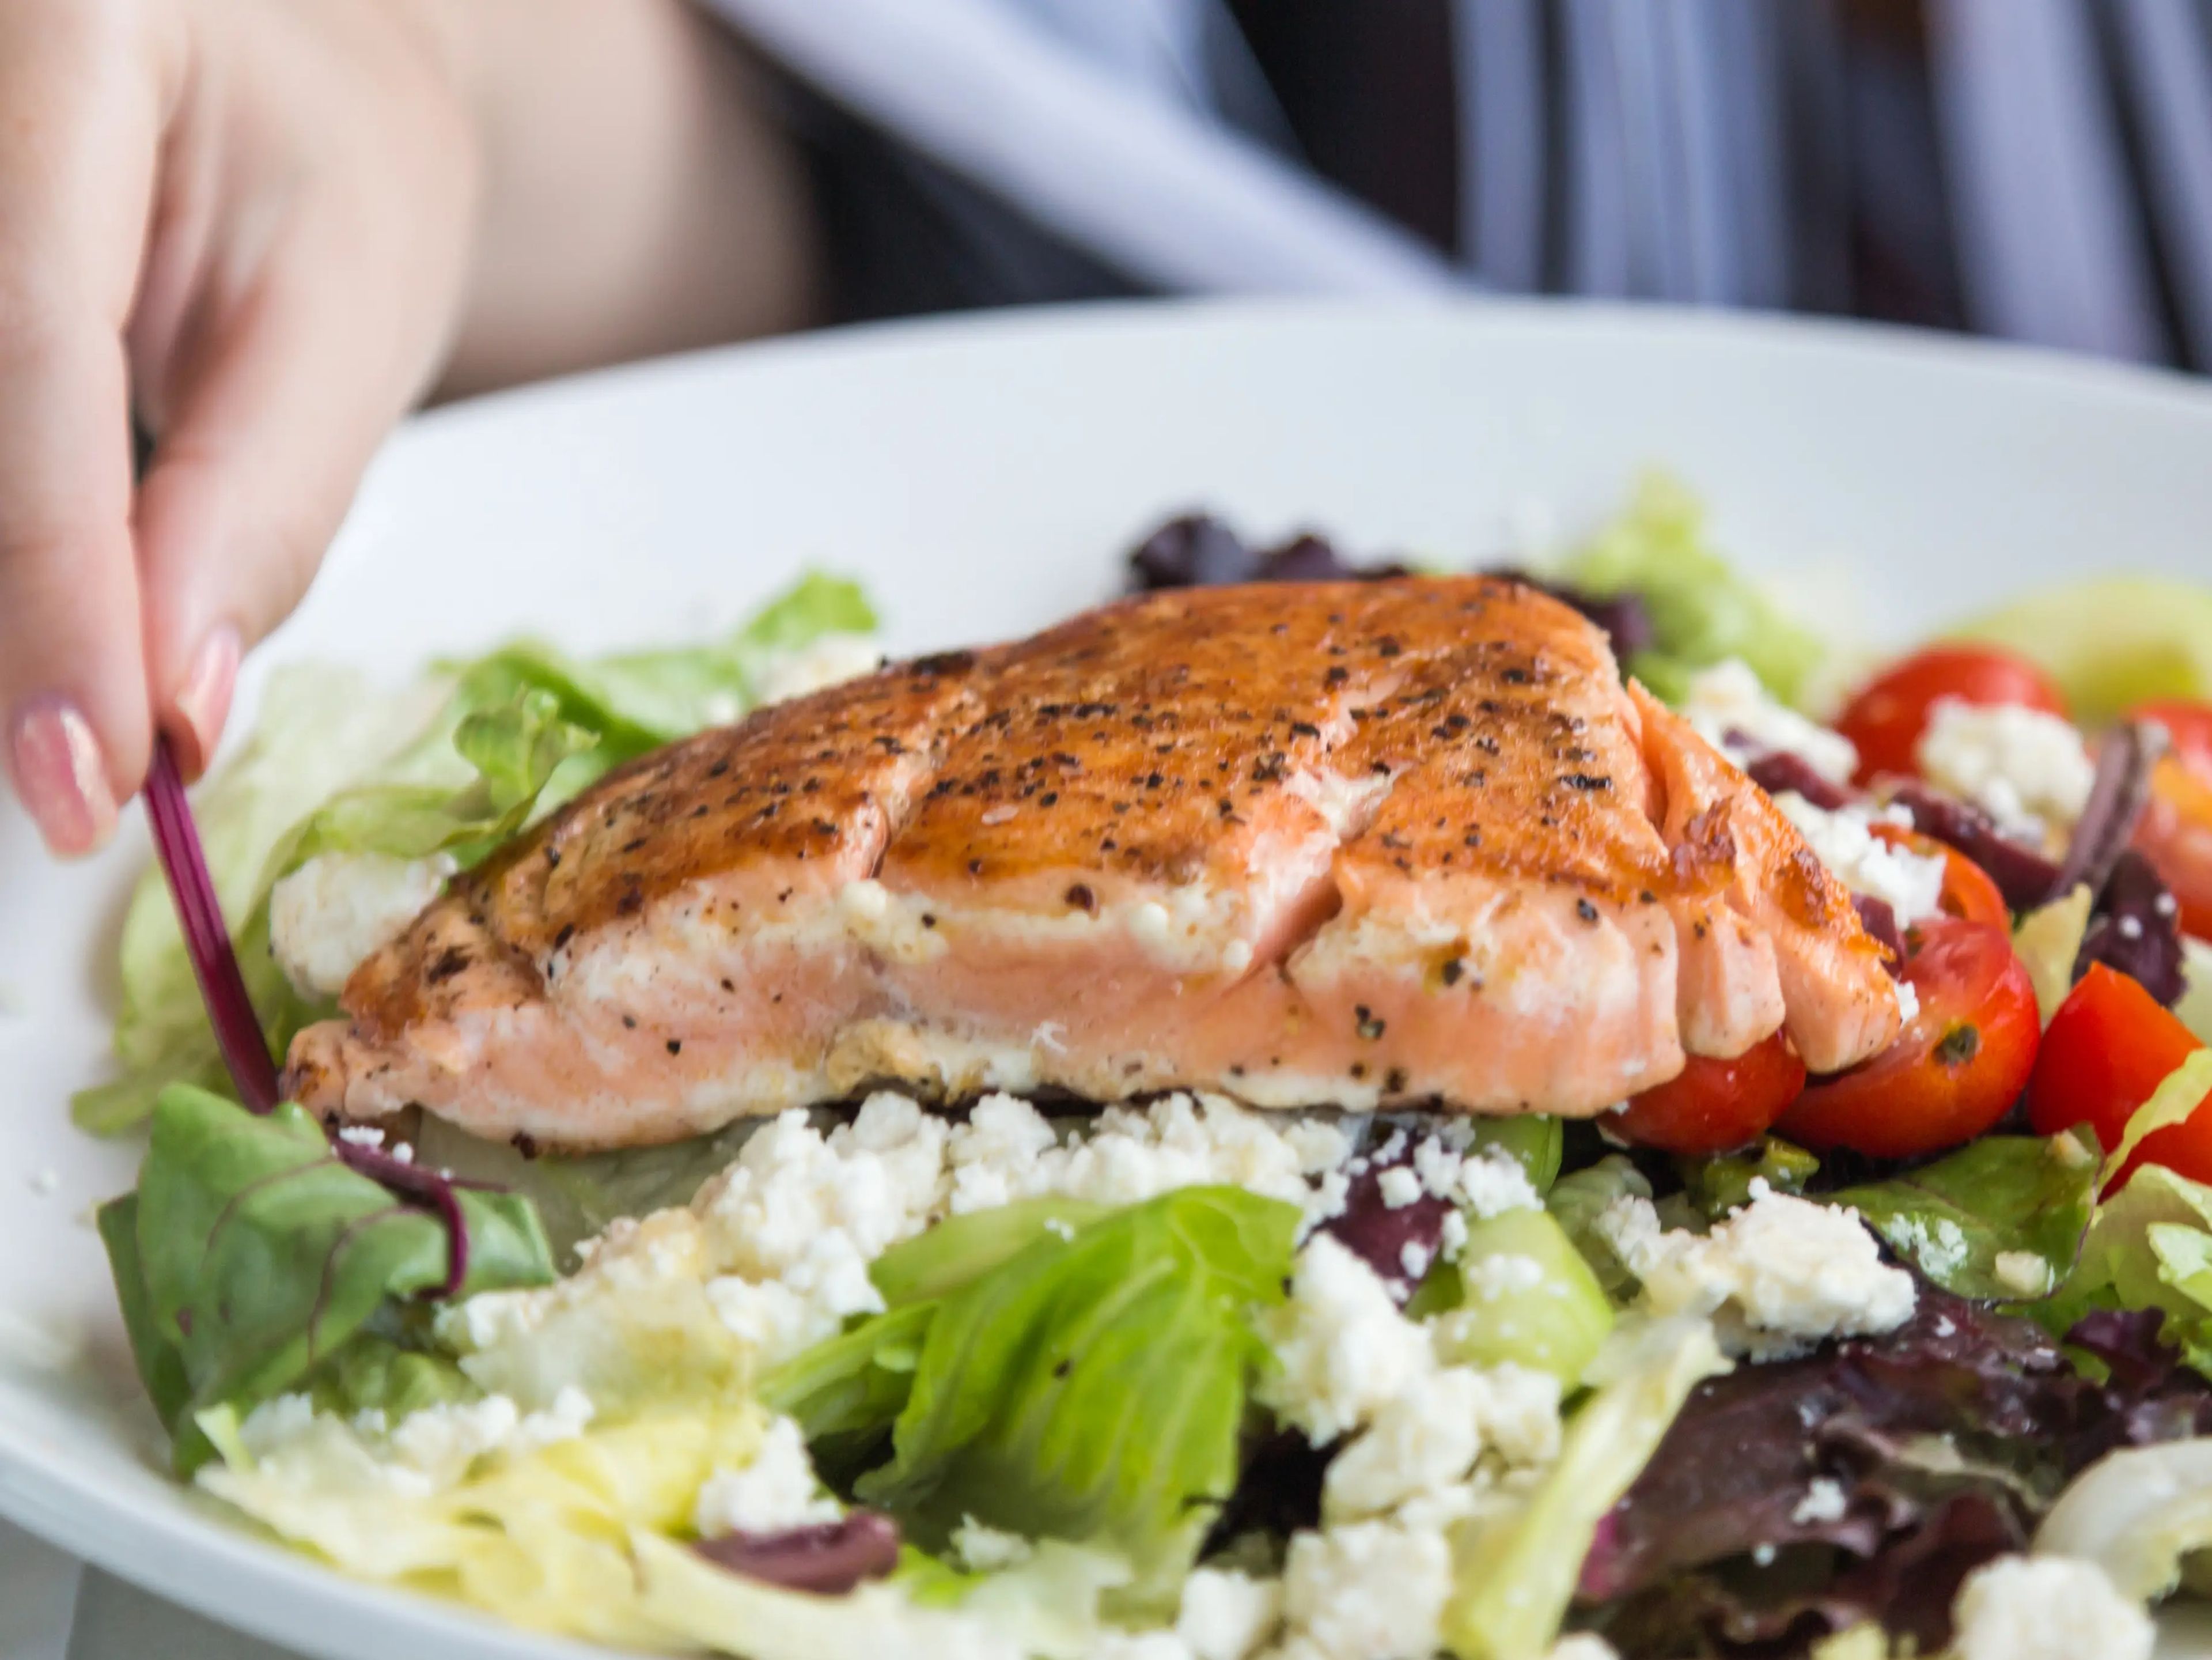 El salmón te aporta omega-3.